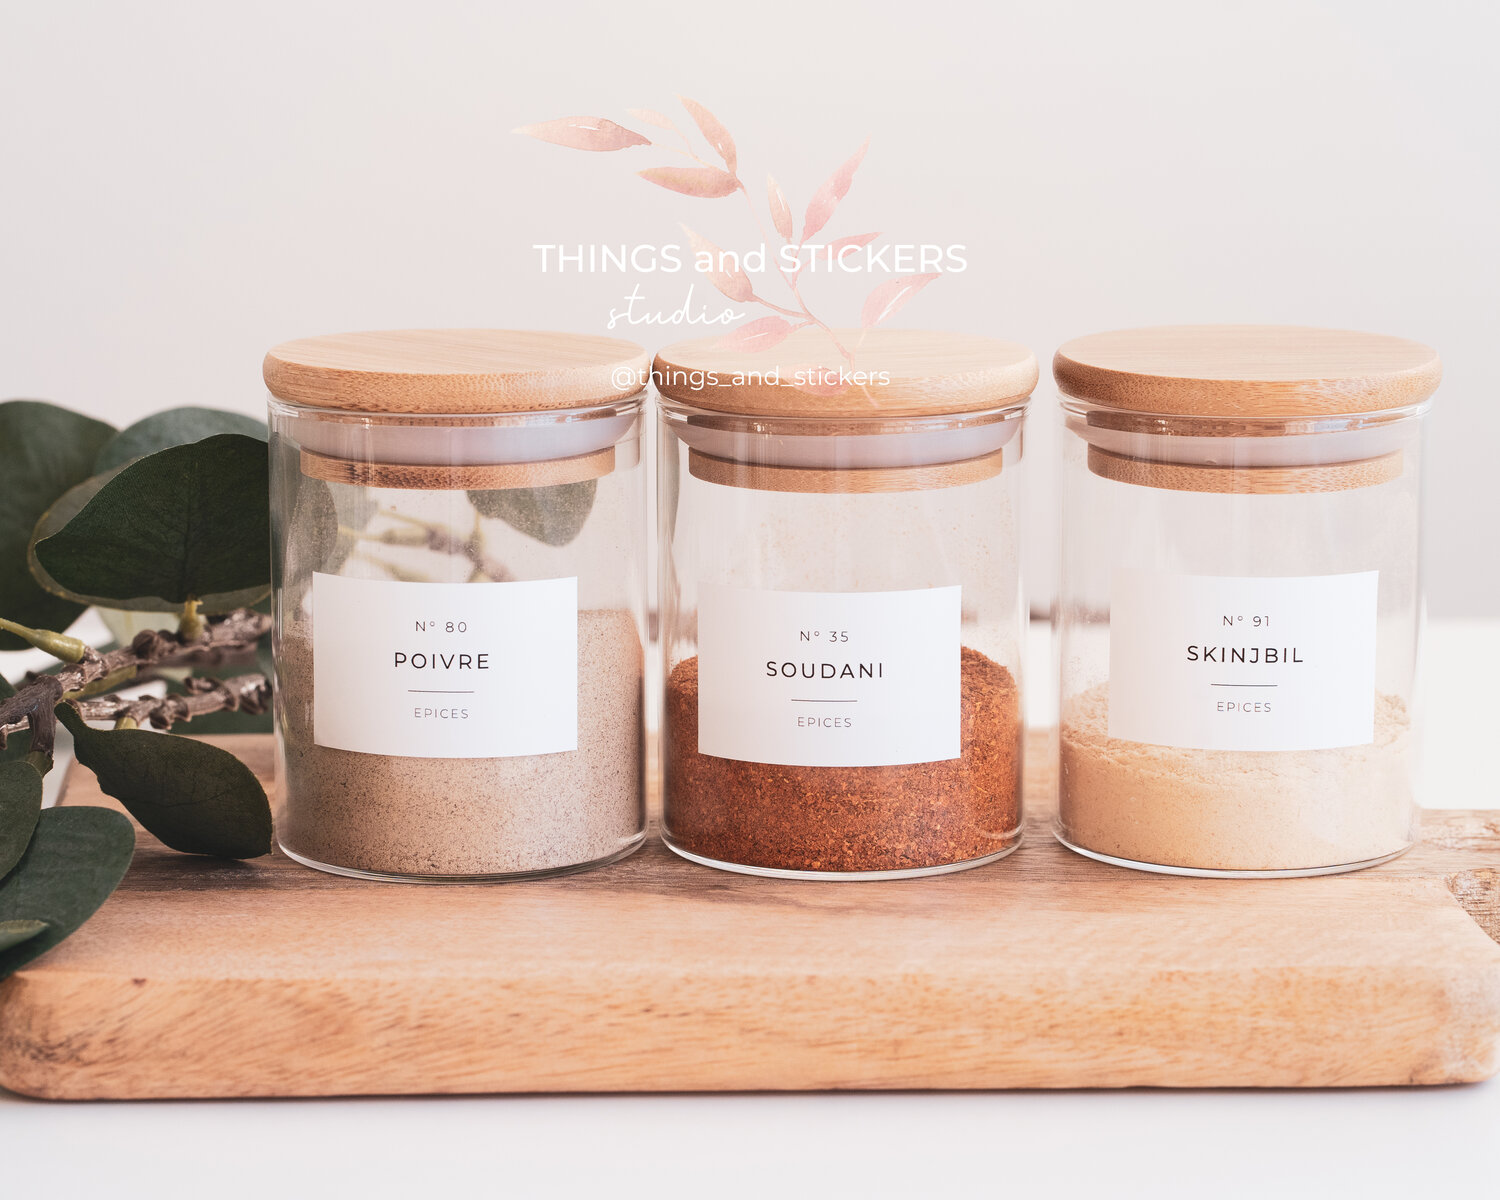 Des étiquettes durables et esthétiques pour vos pots à épices - Things and  Stickers — THINGS and STICKERS